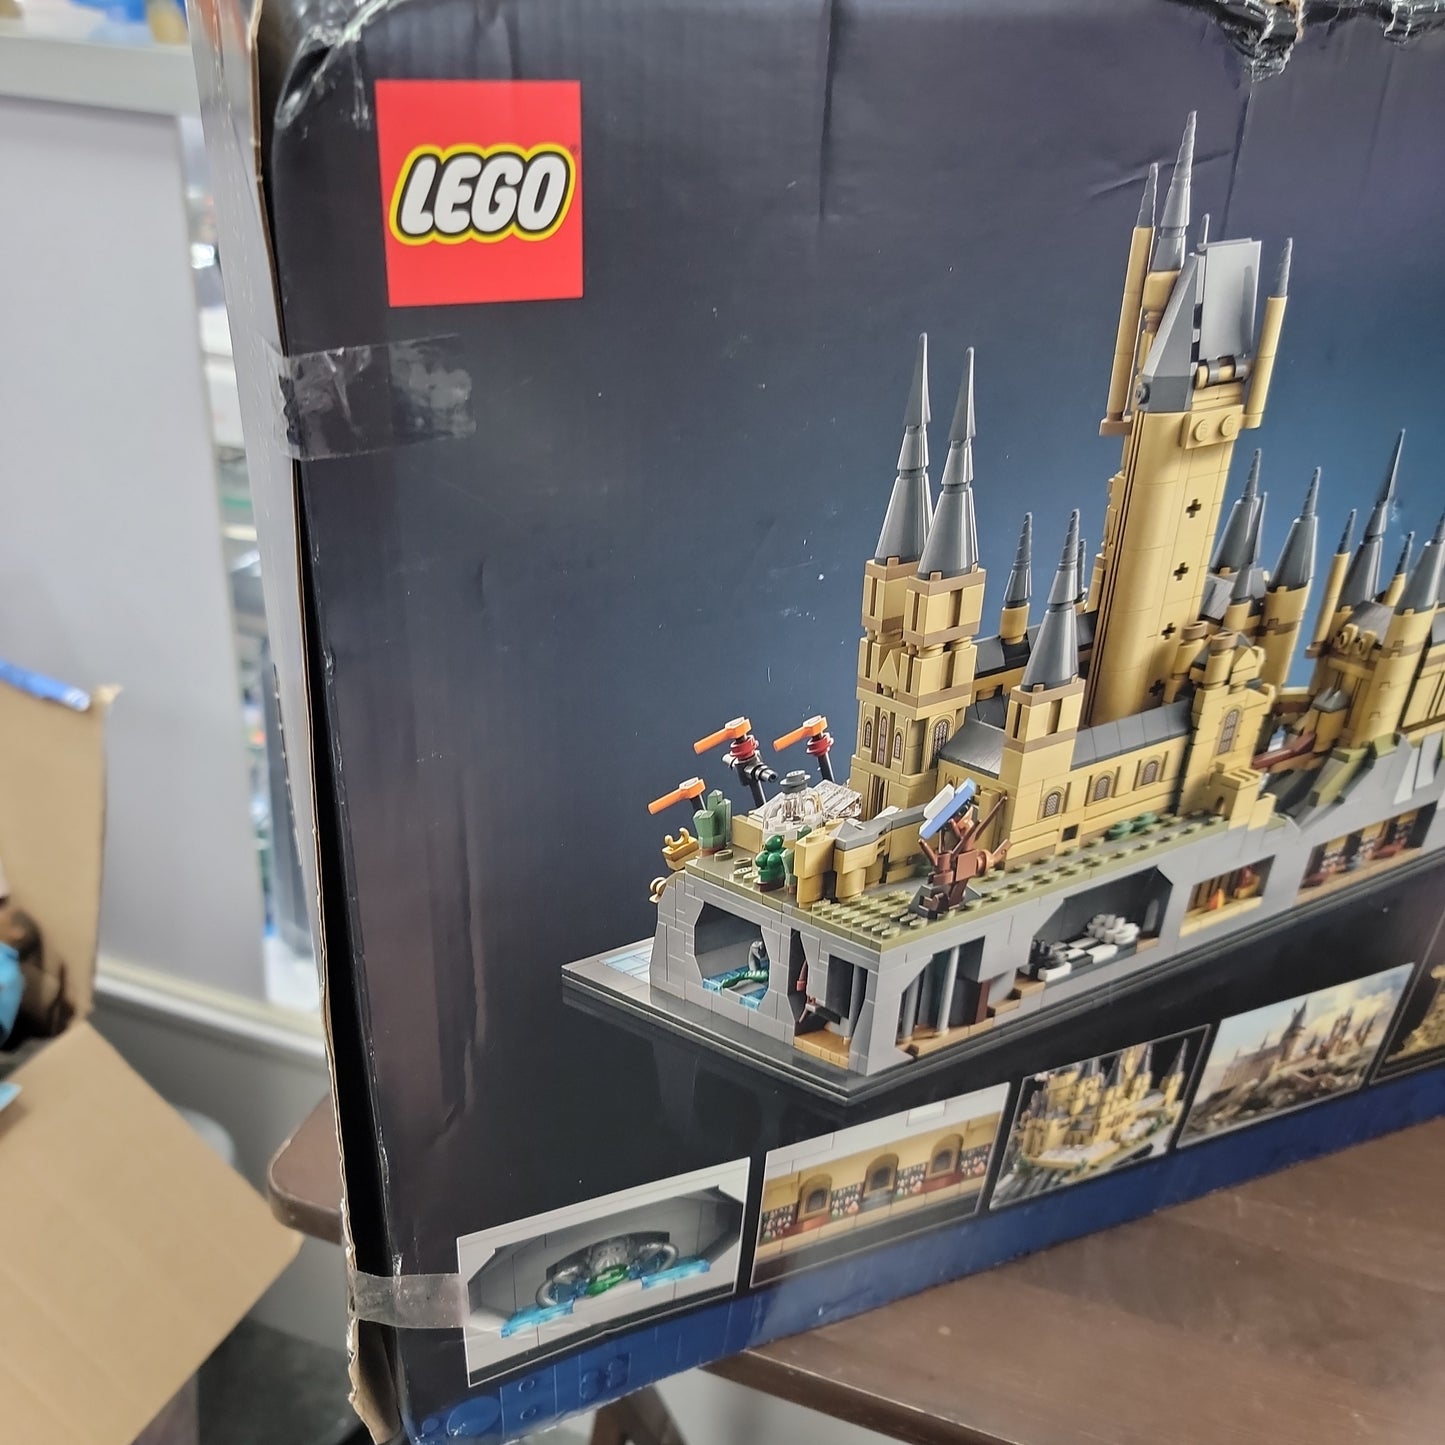 Harry Potter Hogwarts Castle and Grounds Lego Set-Damaged Box